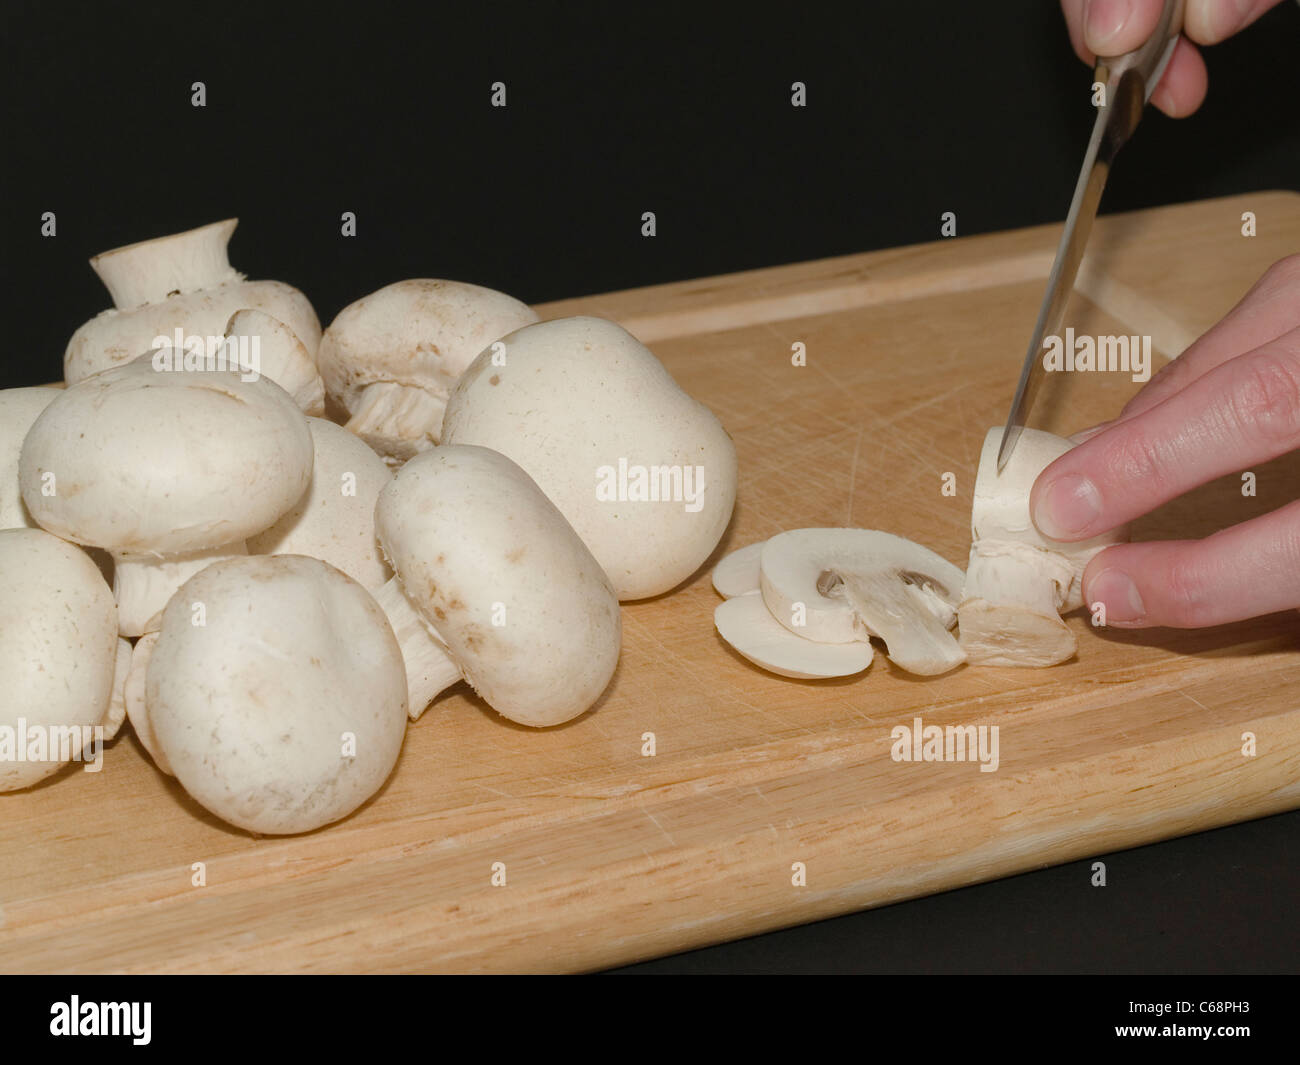 Gli champignon werden Mit einem Messer auf einem Holzbrett geschnitten | Funghi sarà tagliata con un coltello su un pannello di legno Foto Stock